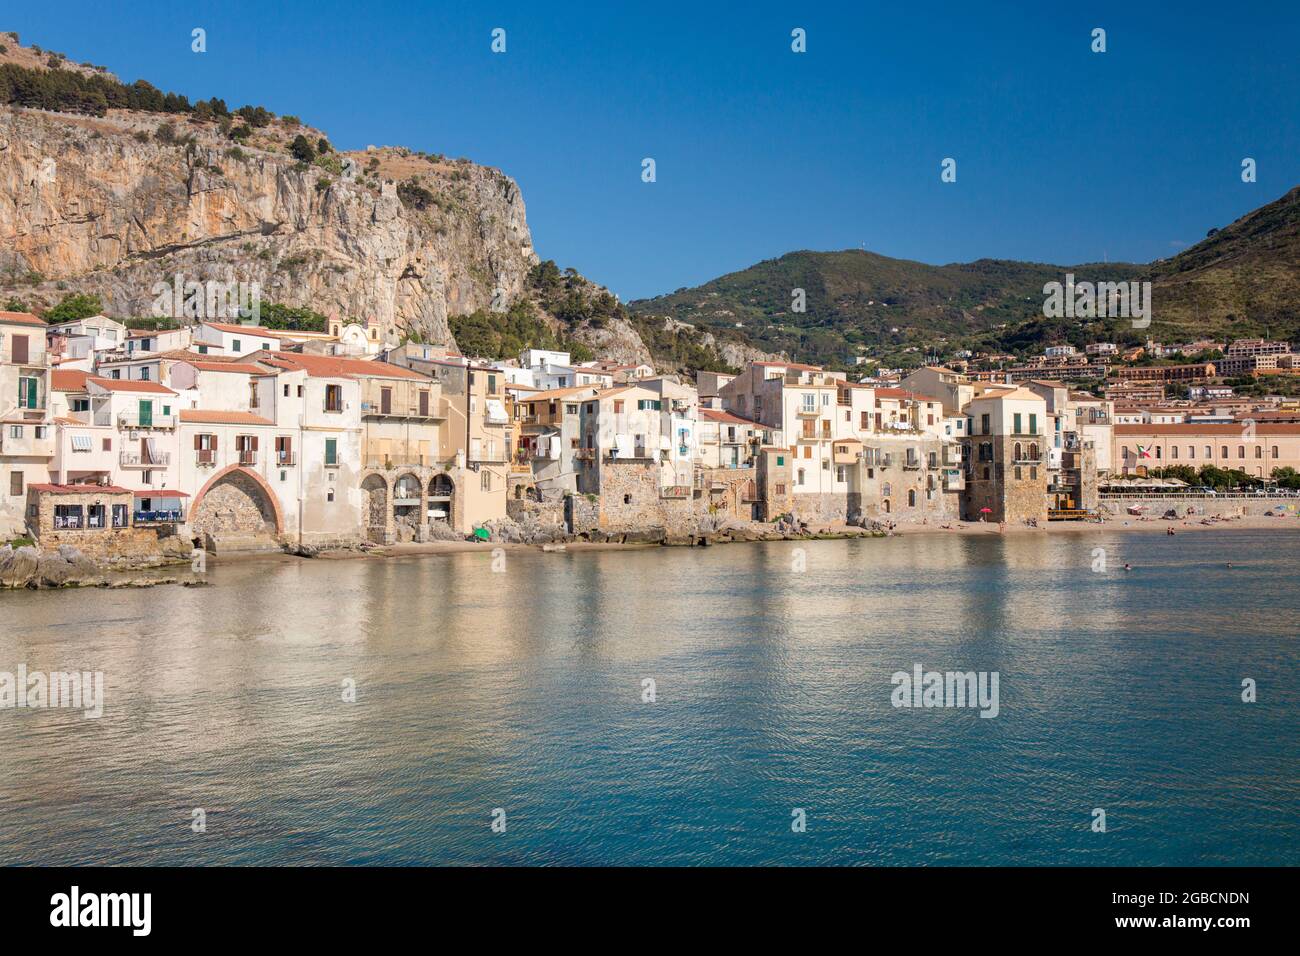 Cefalù, Palermo, Sizilien, Italien. Blick über den ruhigen Hafen auf die Altstadt, überhängende Häuser, die sich entlang der Uferpromenade unter La Rocca gruppieren. Stockfoto